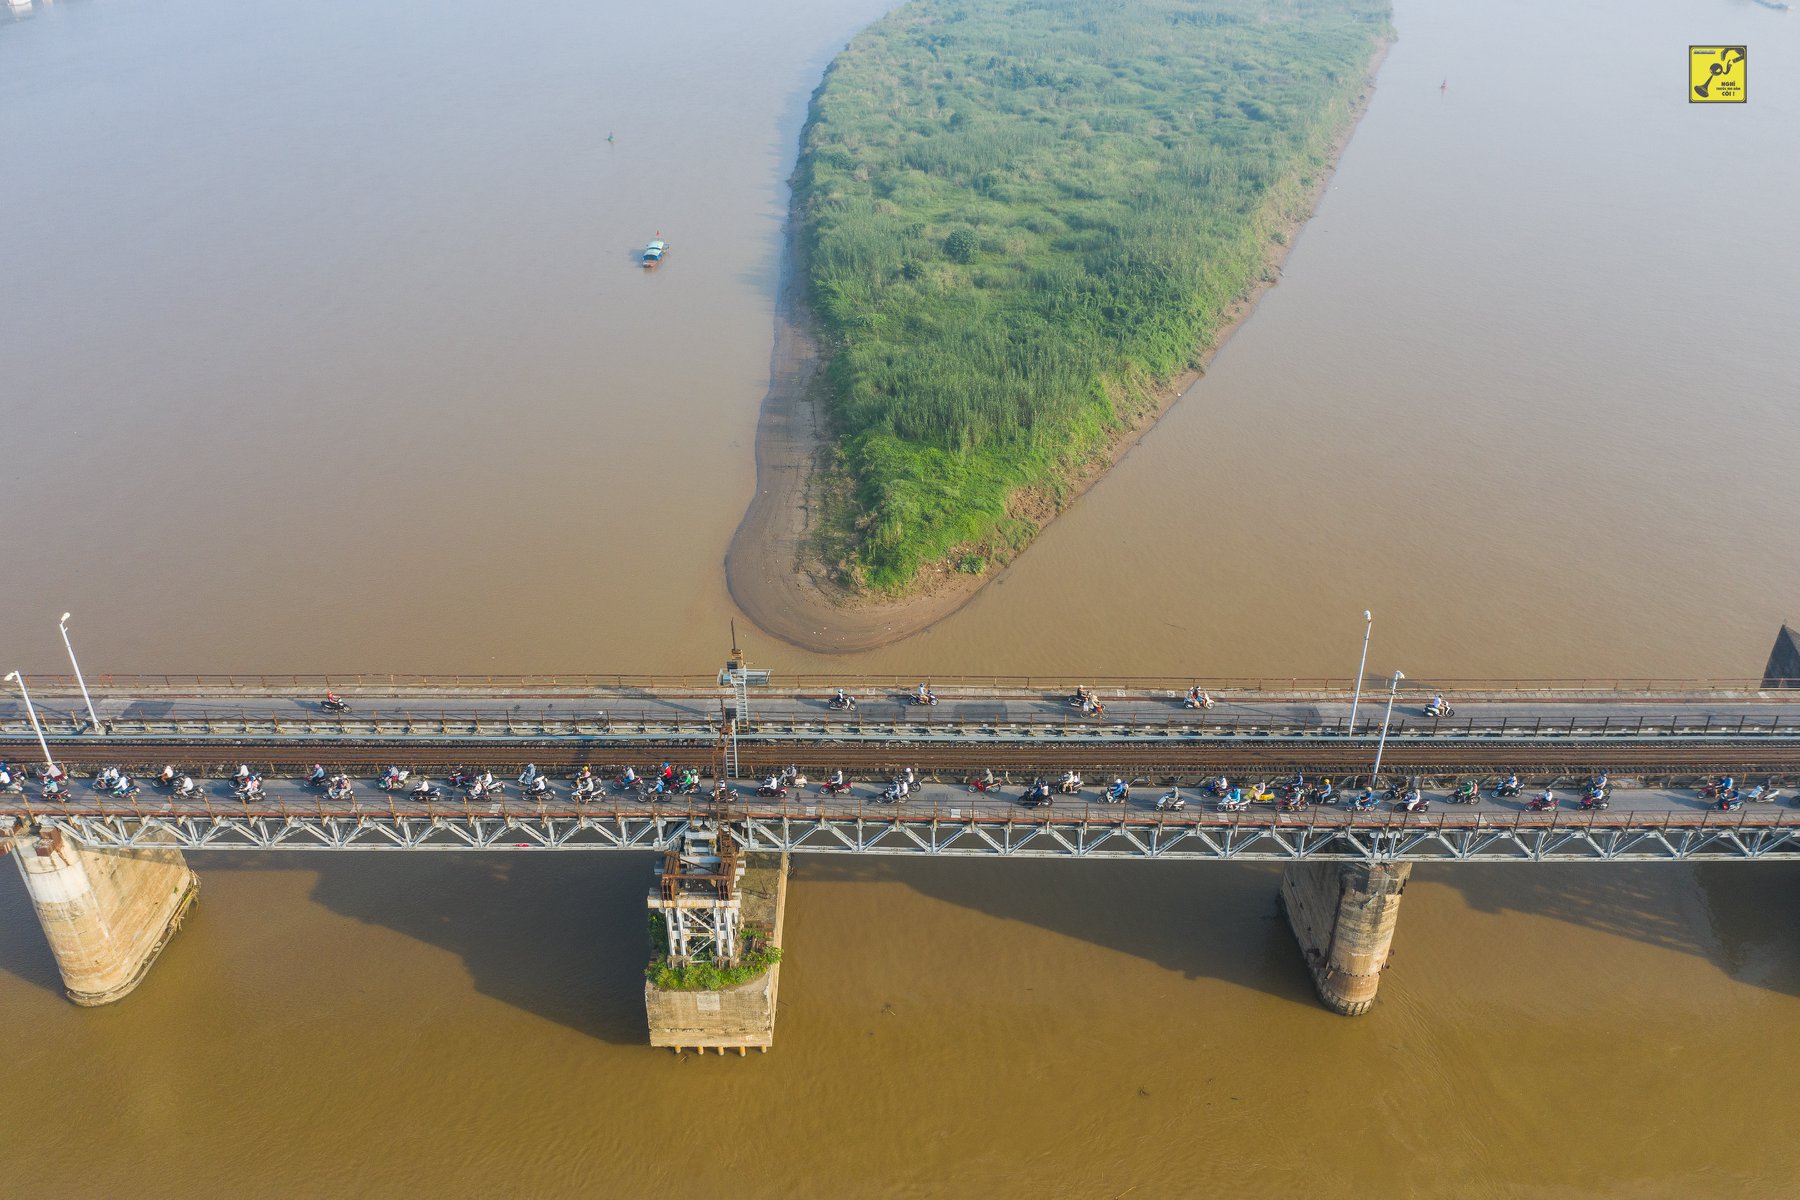 Cầu Long Biên - một trong 2 cây cầu ở Việt Nam được tổ chức lưu thông ngược chiều (đi trái phần đường)